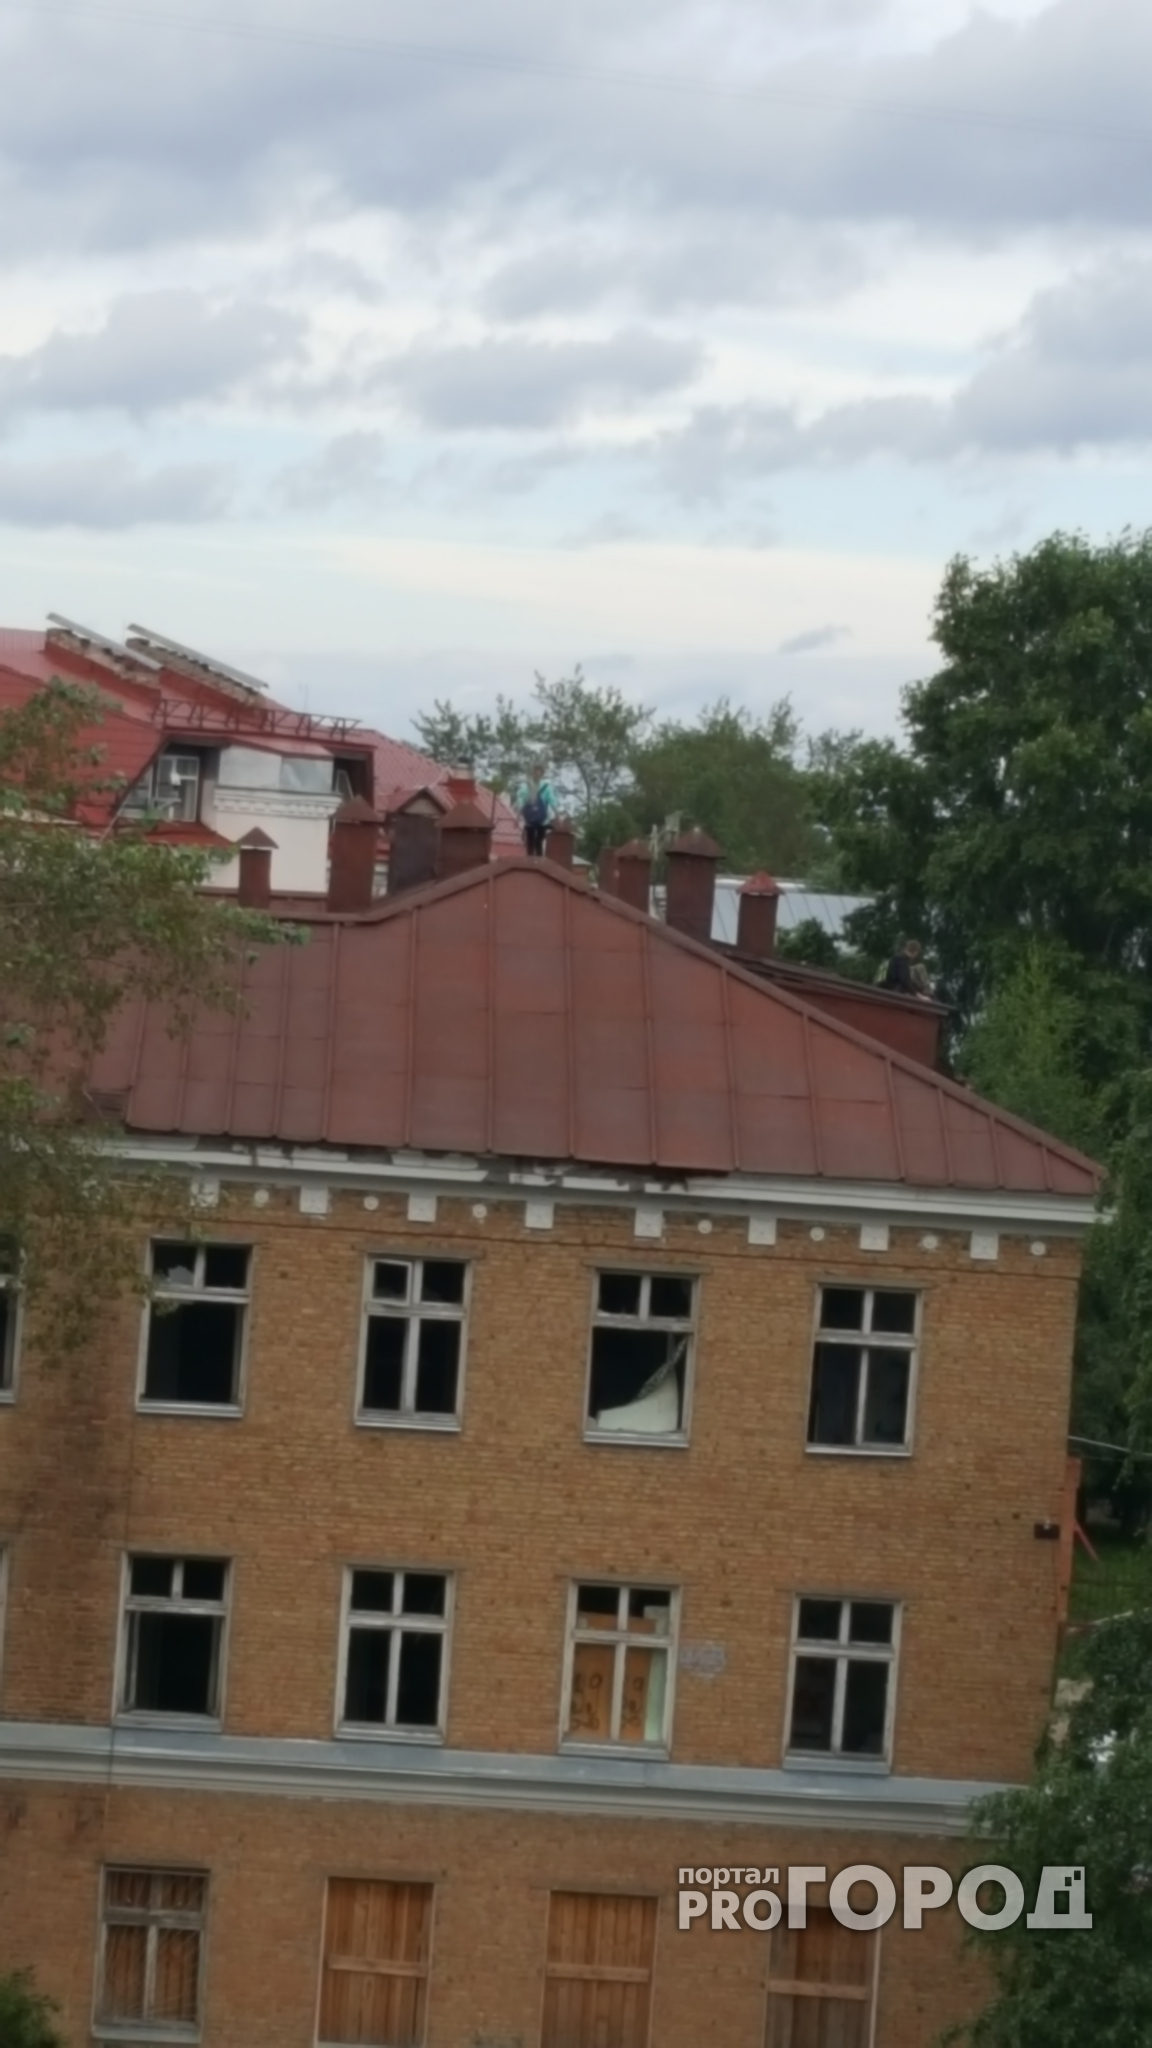 В Сыктывкаре дети лезут на крышу заброшенной поликлиники ради фотографий (фото)